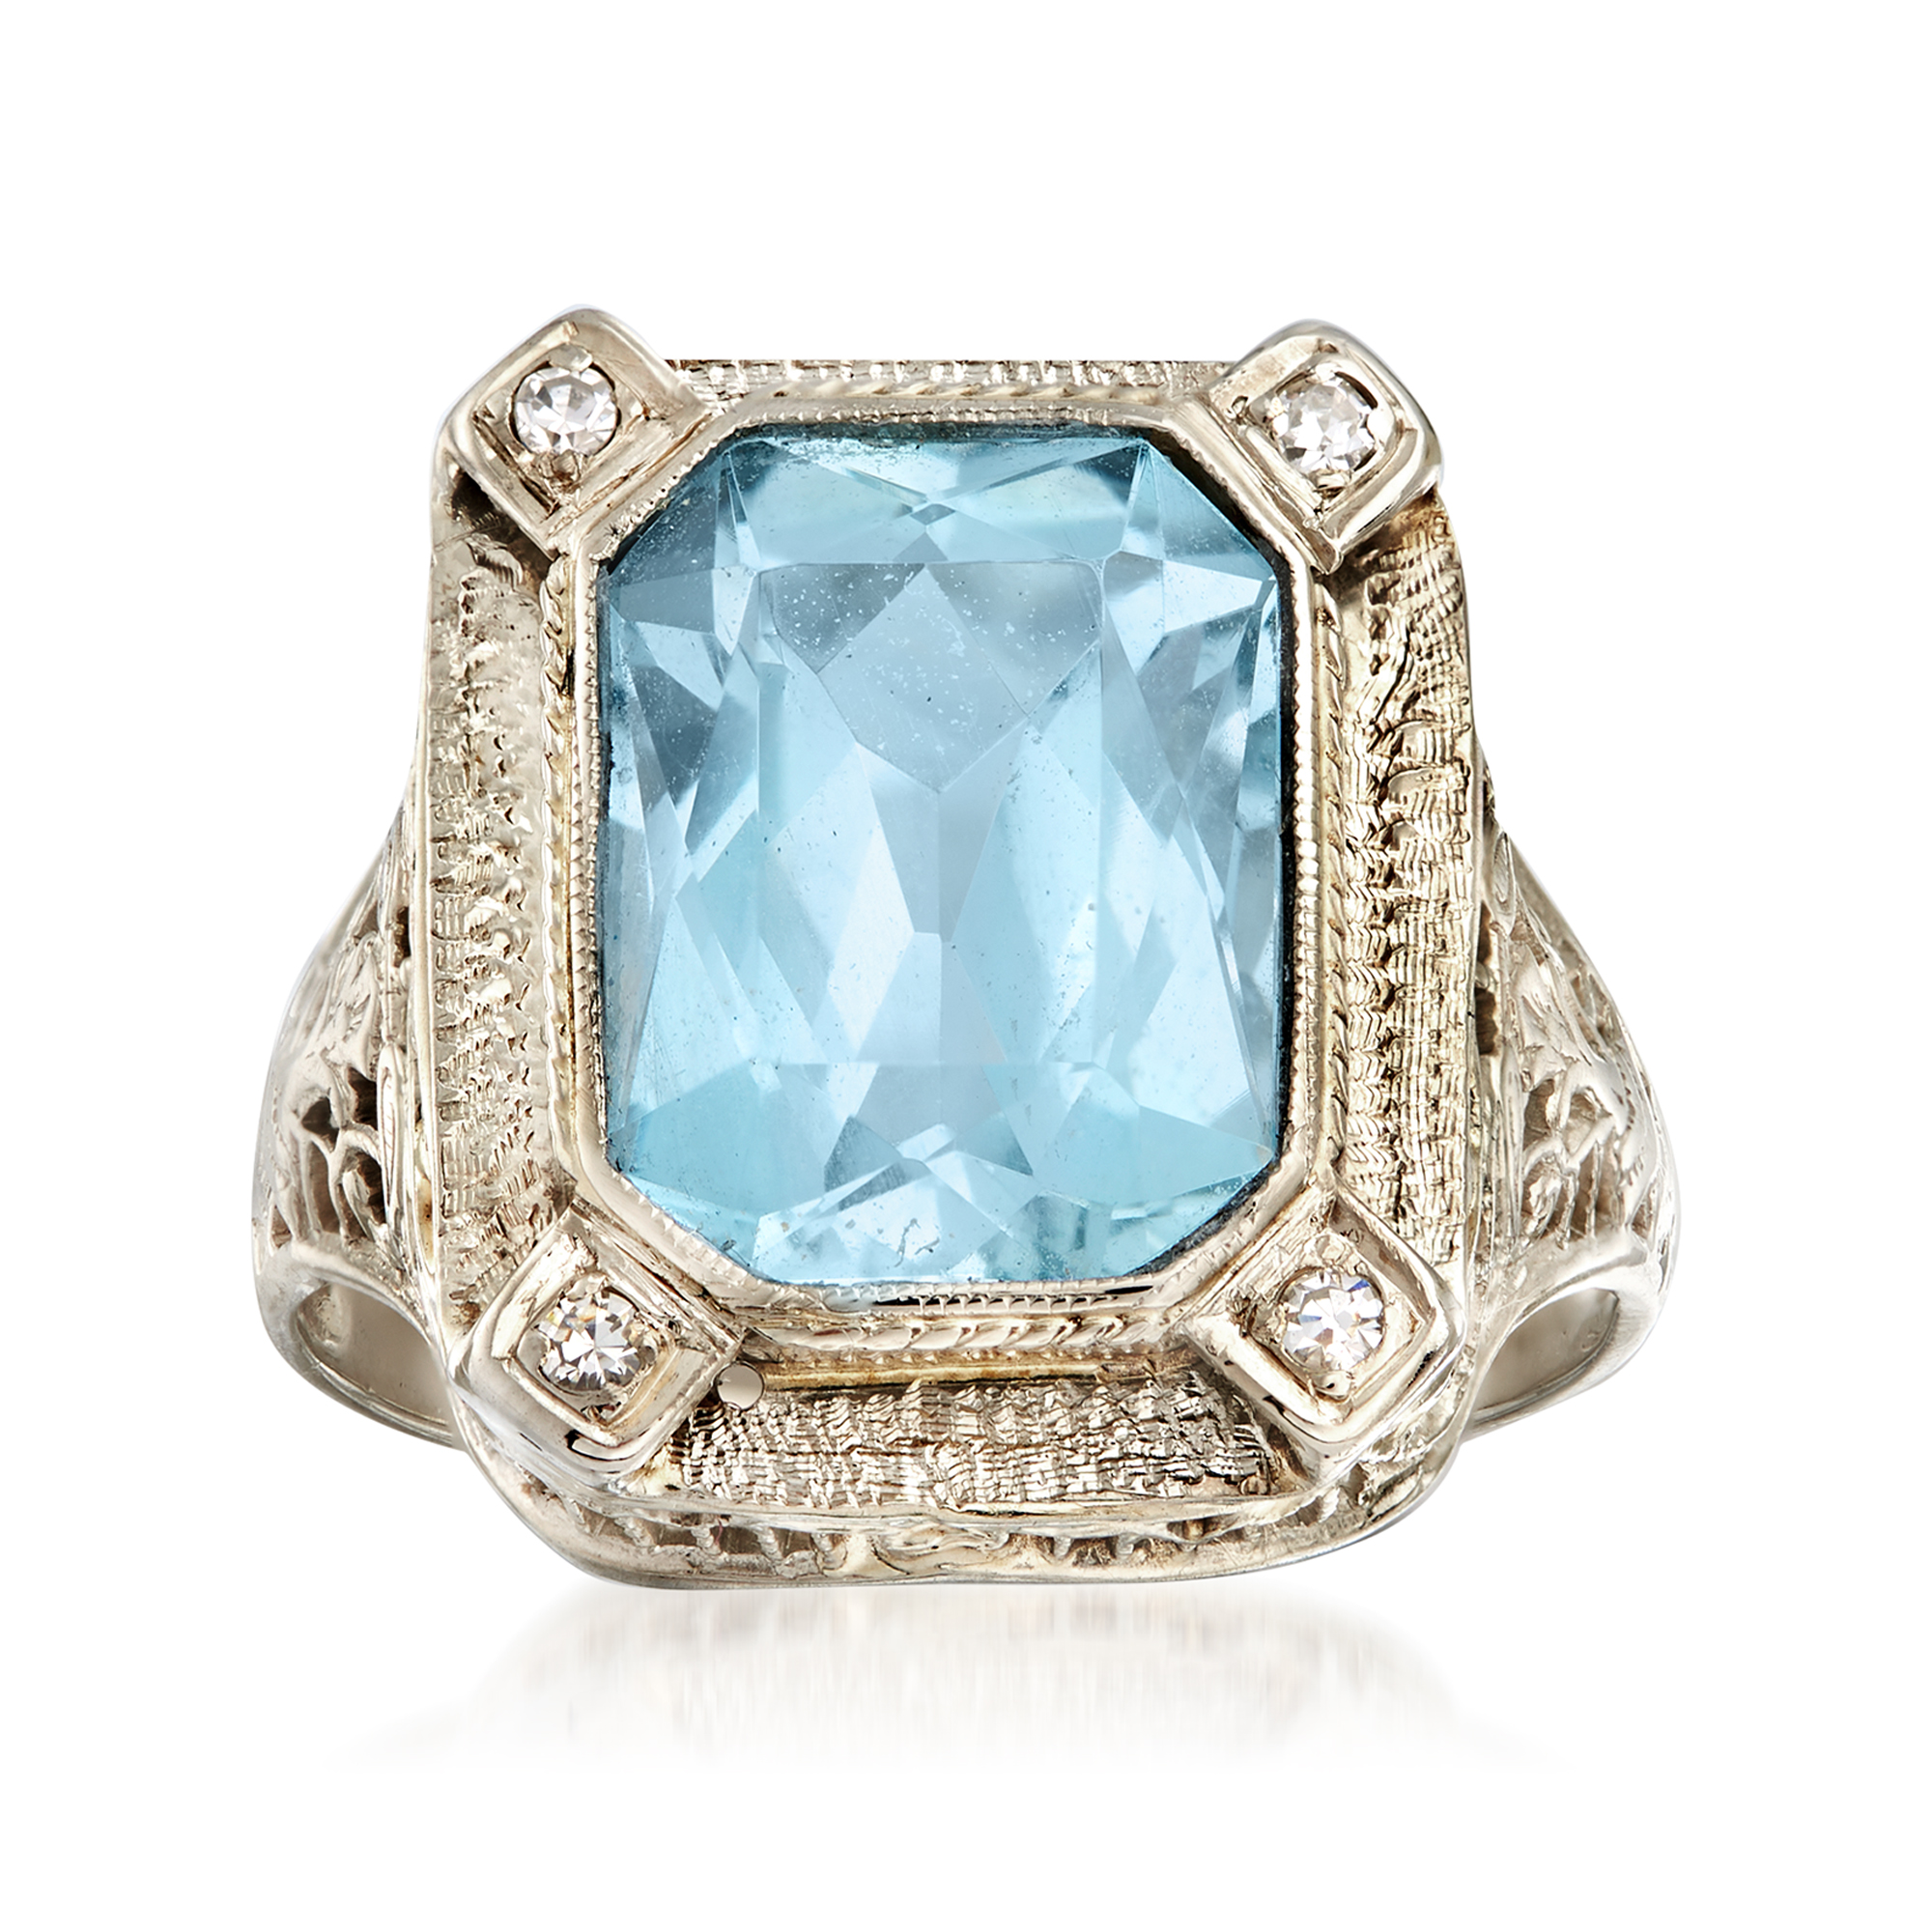 C. 1950 Vintage 5.00 Carat Aquamarine Ring with Diamond Accents in ...